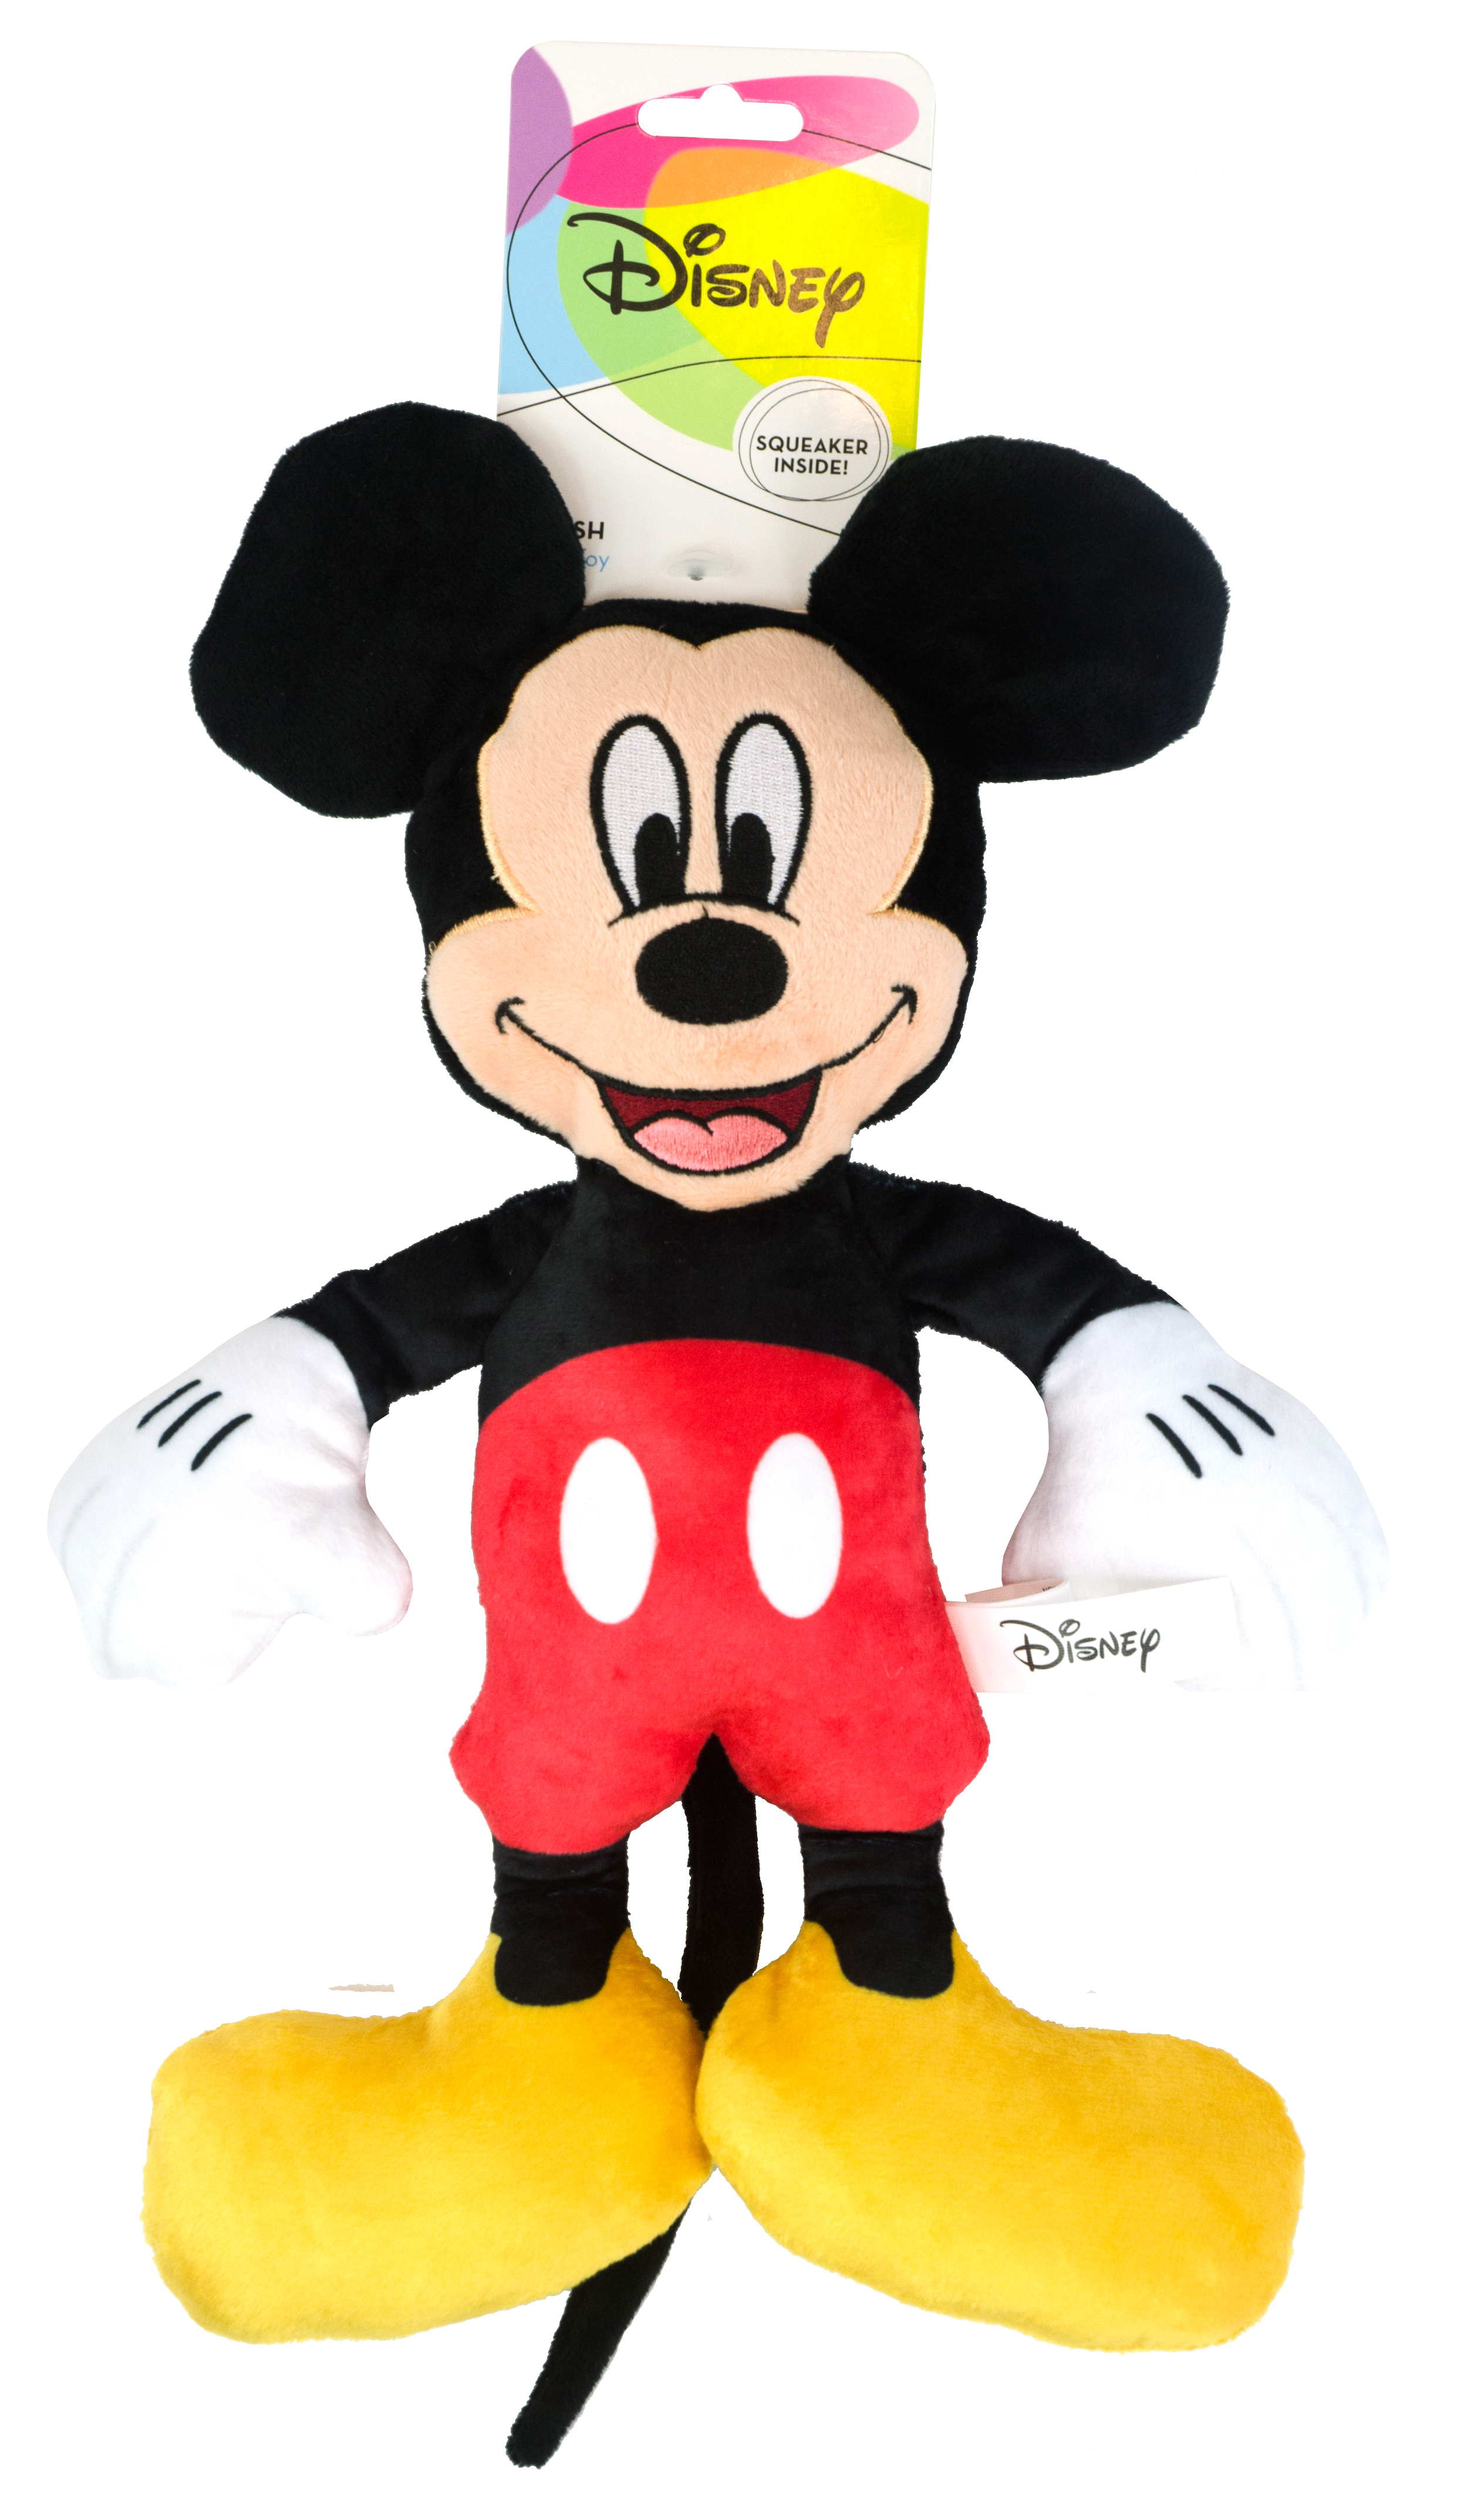 Disney Plush Toy - Mickey Mouse